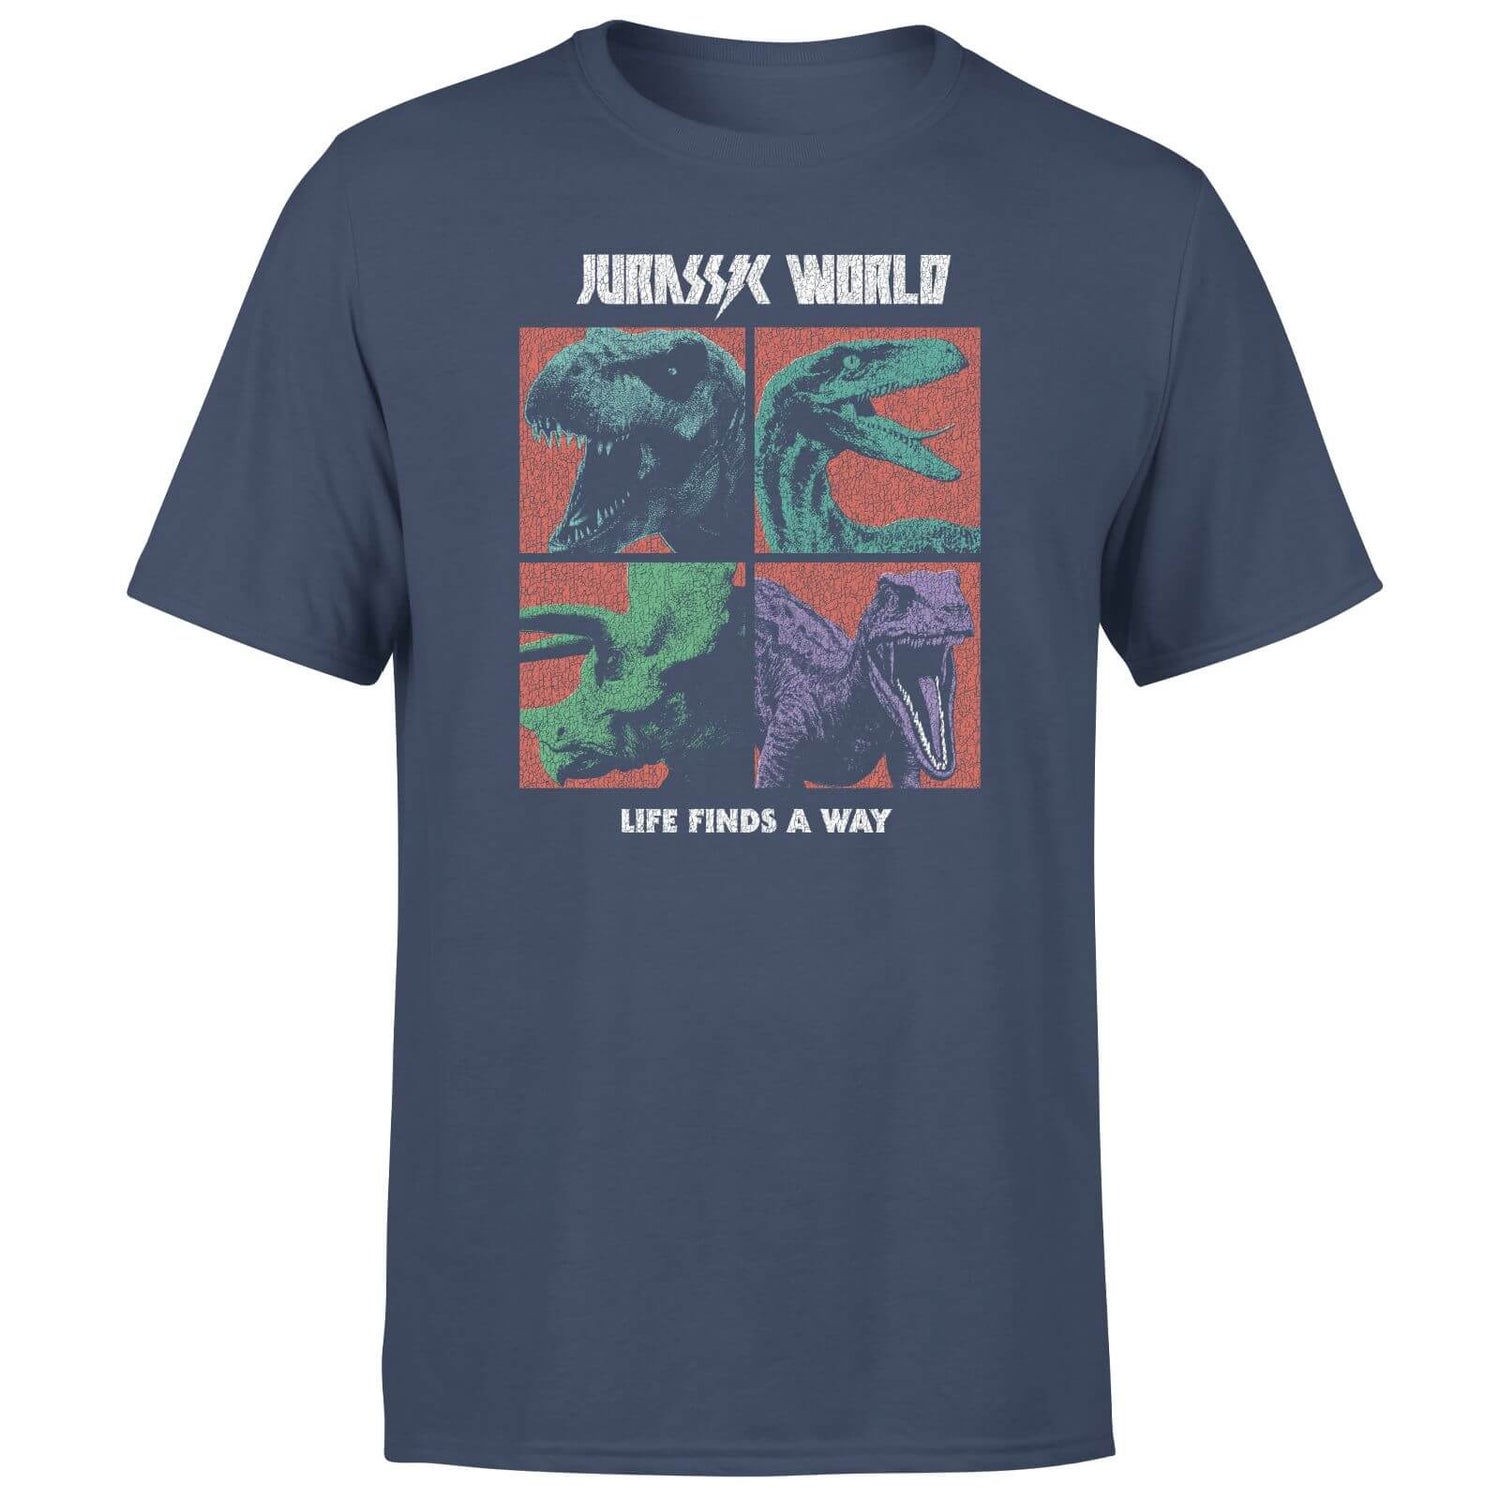 Jurassic Park World Four Colour Faces Men's T-Shirt - Navy